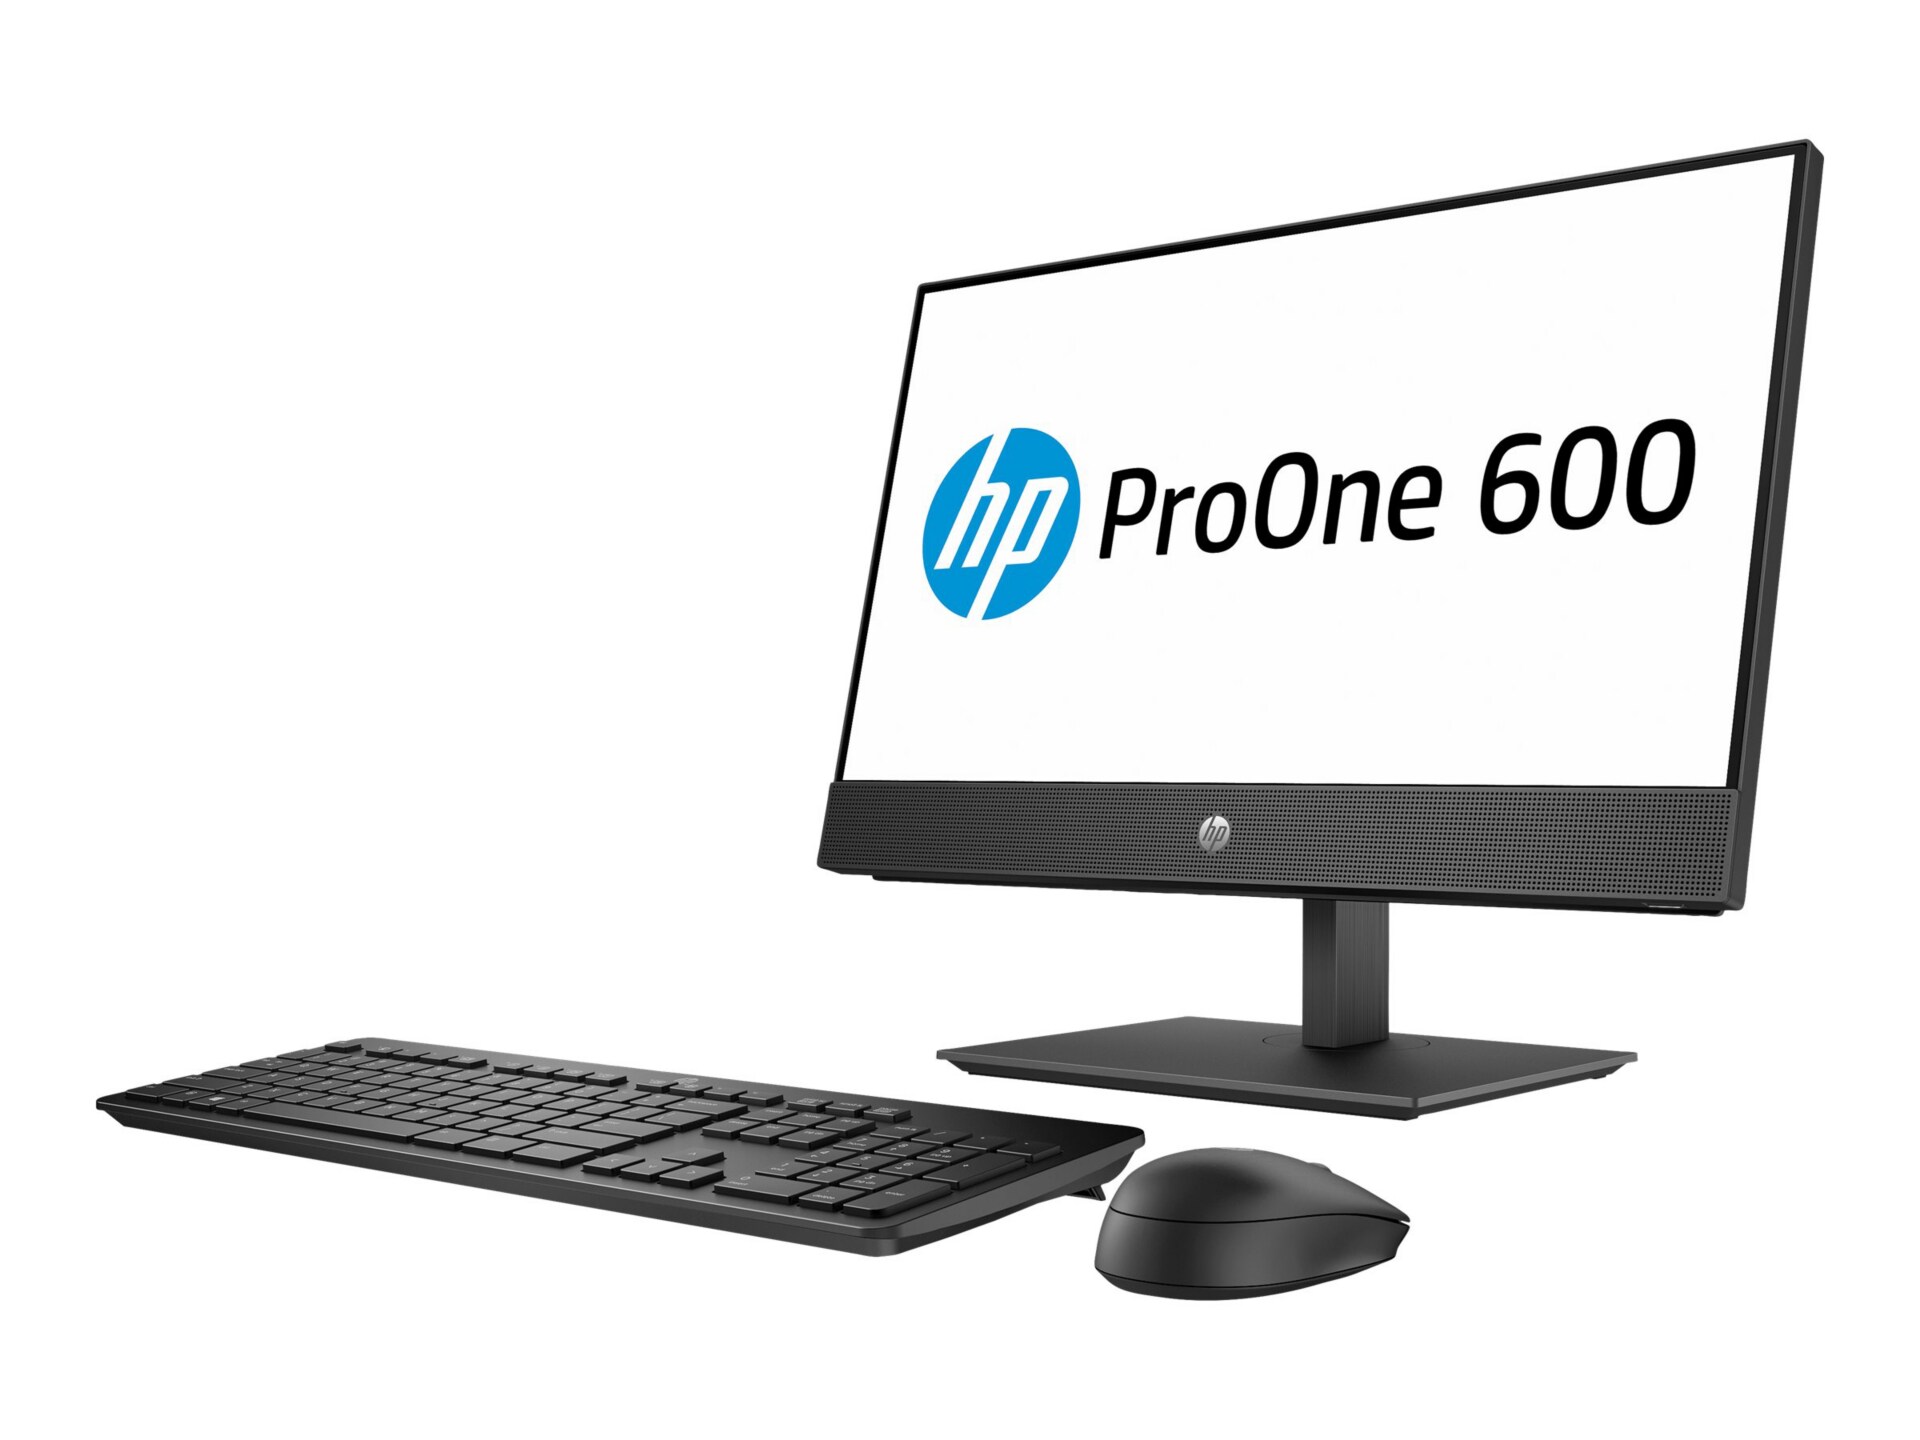 HP SB ProOne 600 G4 AiO 21.5" Core i5-8500 8GB RAM 256GB W10P - Non-Touch